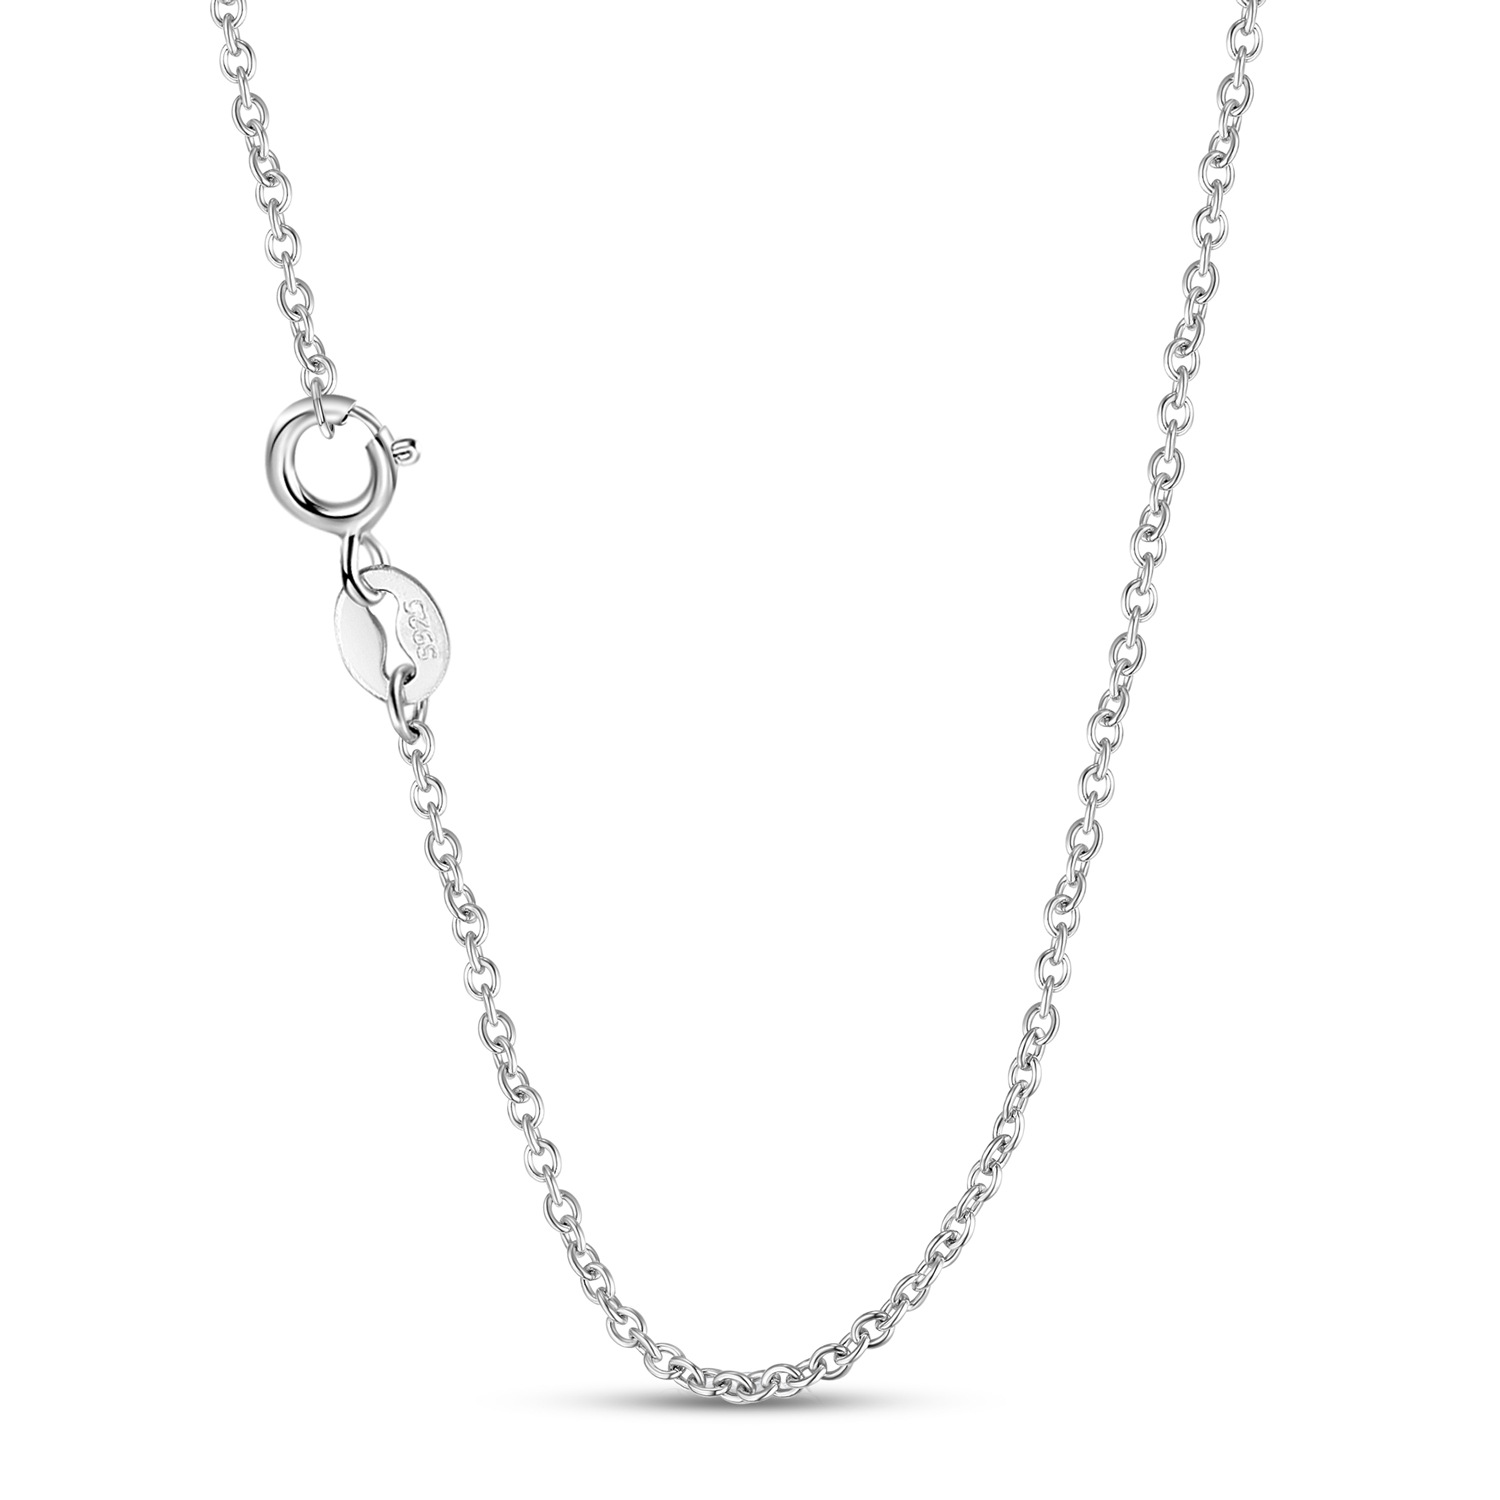 2:Necklace-45cm